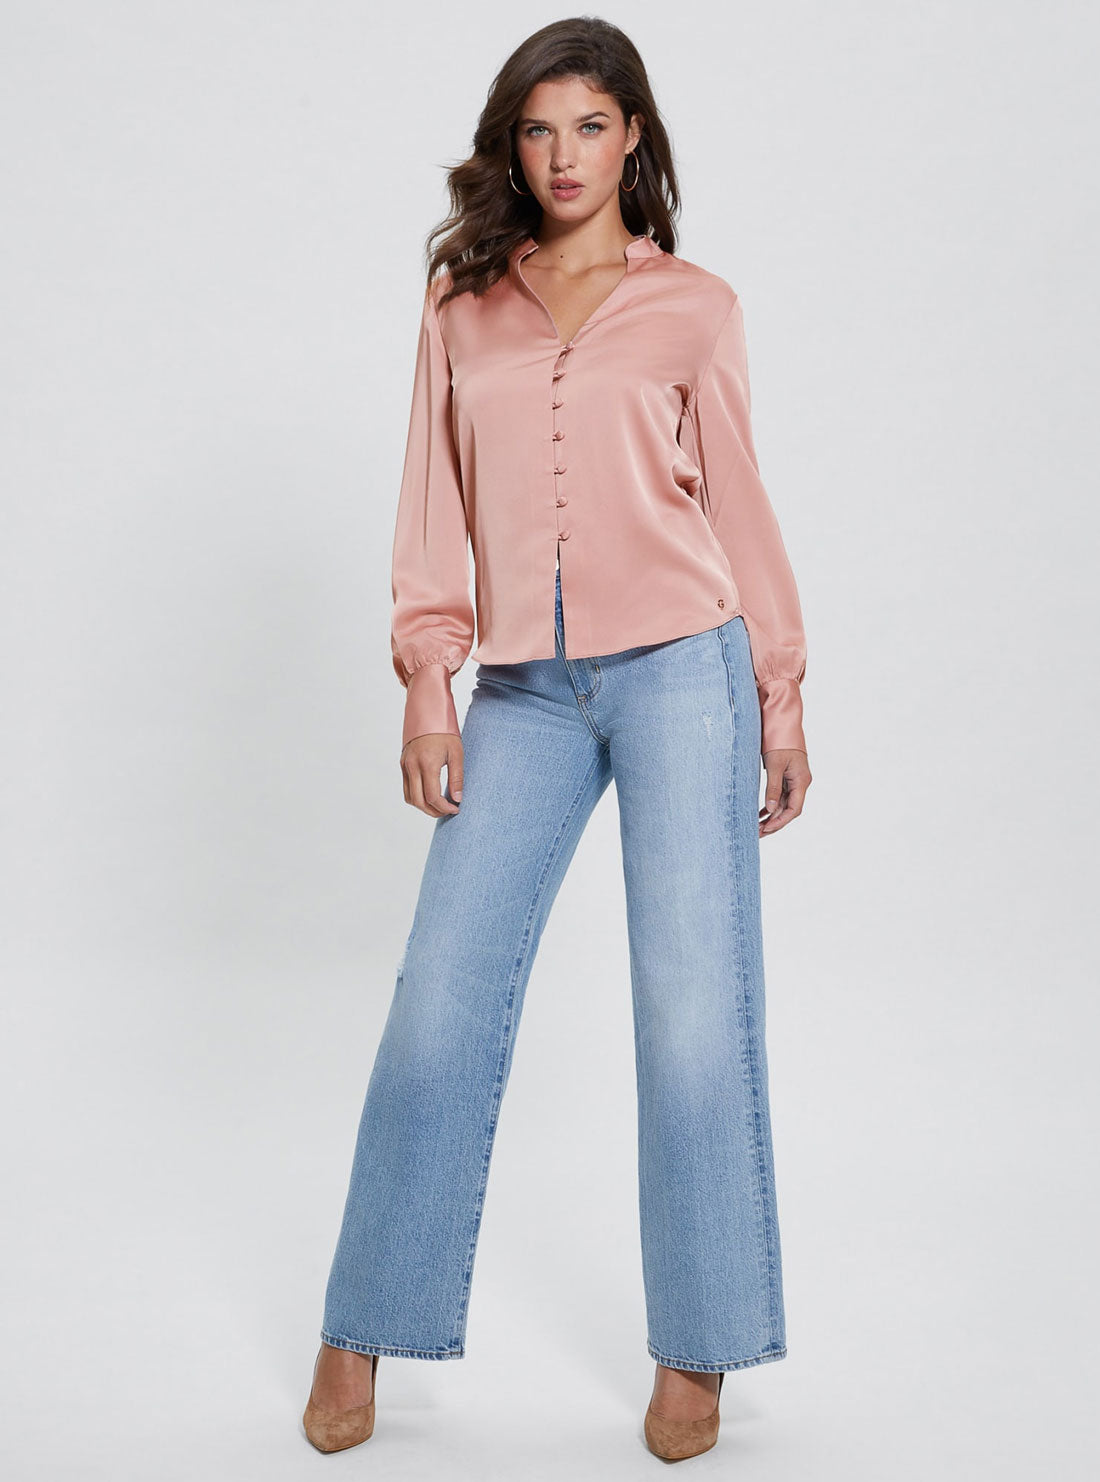 Eco Blush Rita Satin Shirt | GUESS Women's Apparel | full view